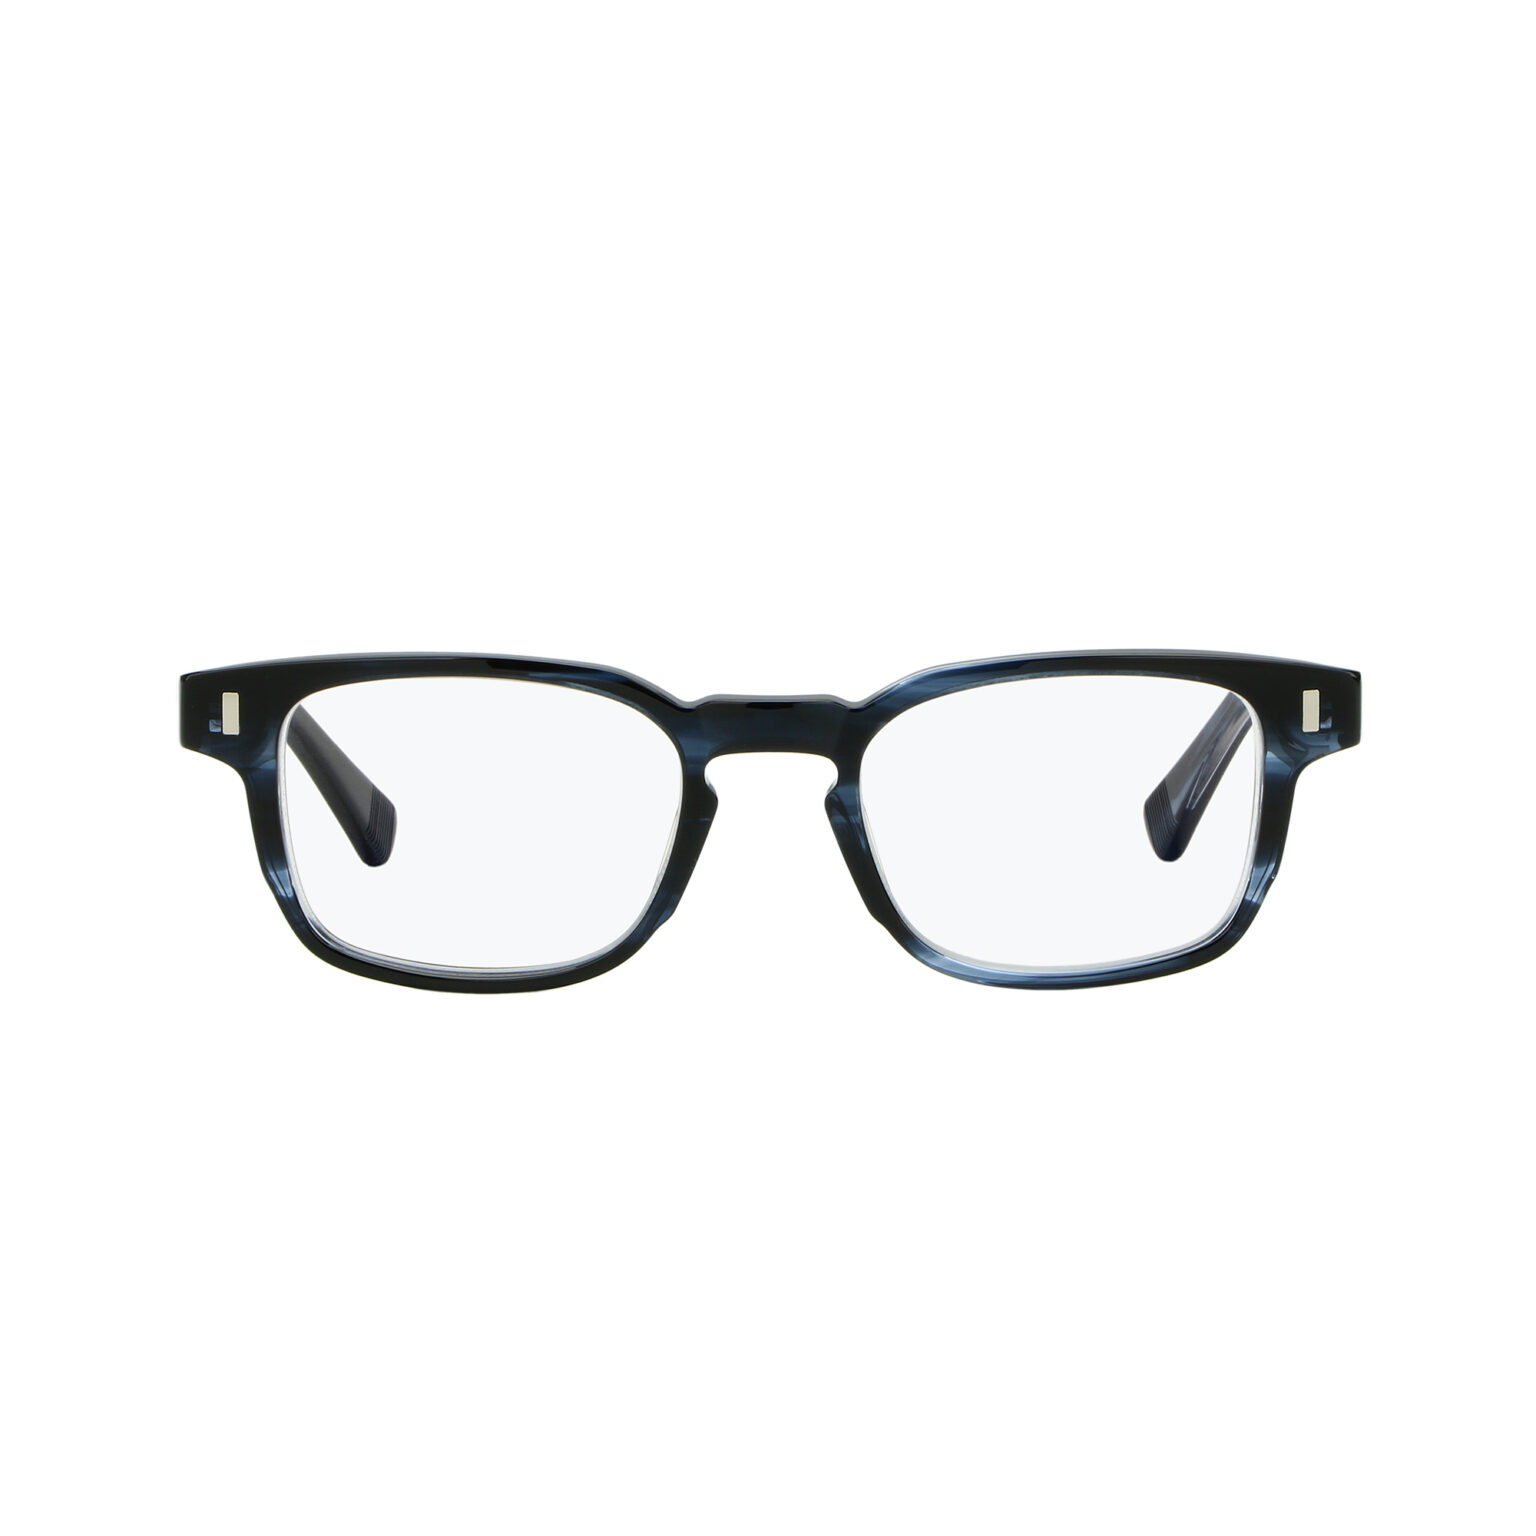 Spektre eyewear optical collection: premium quality eyewear